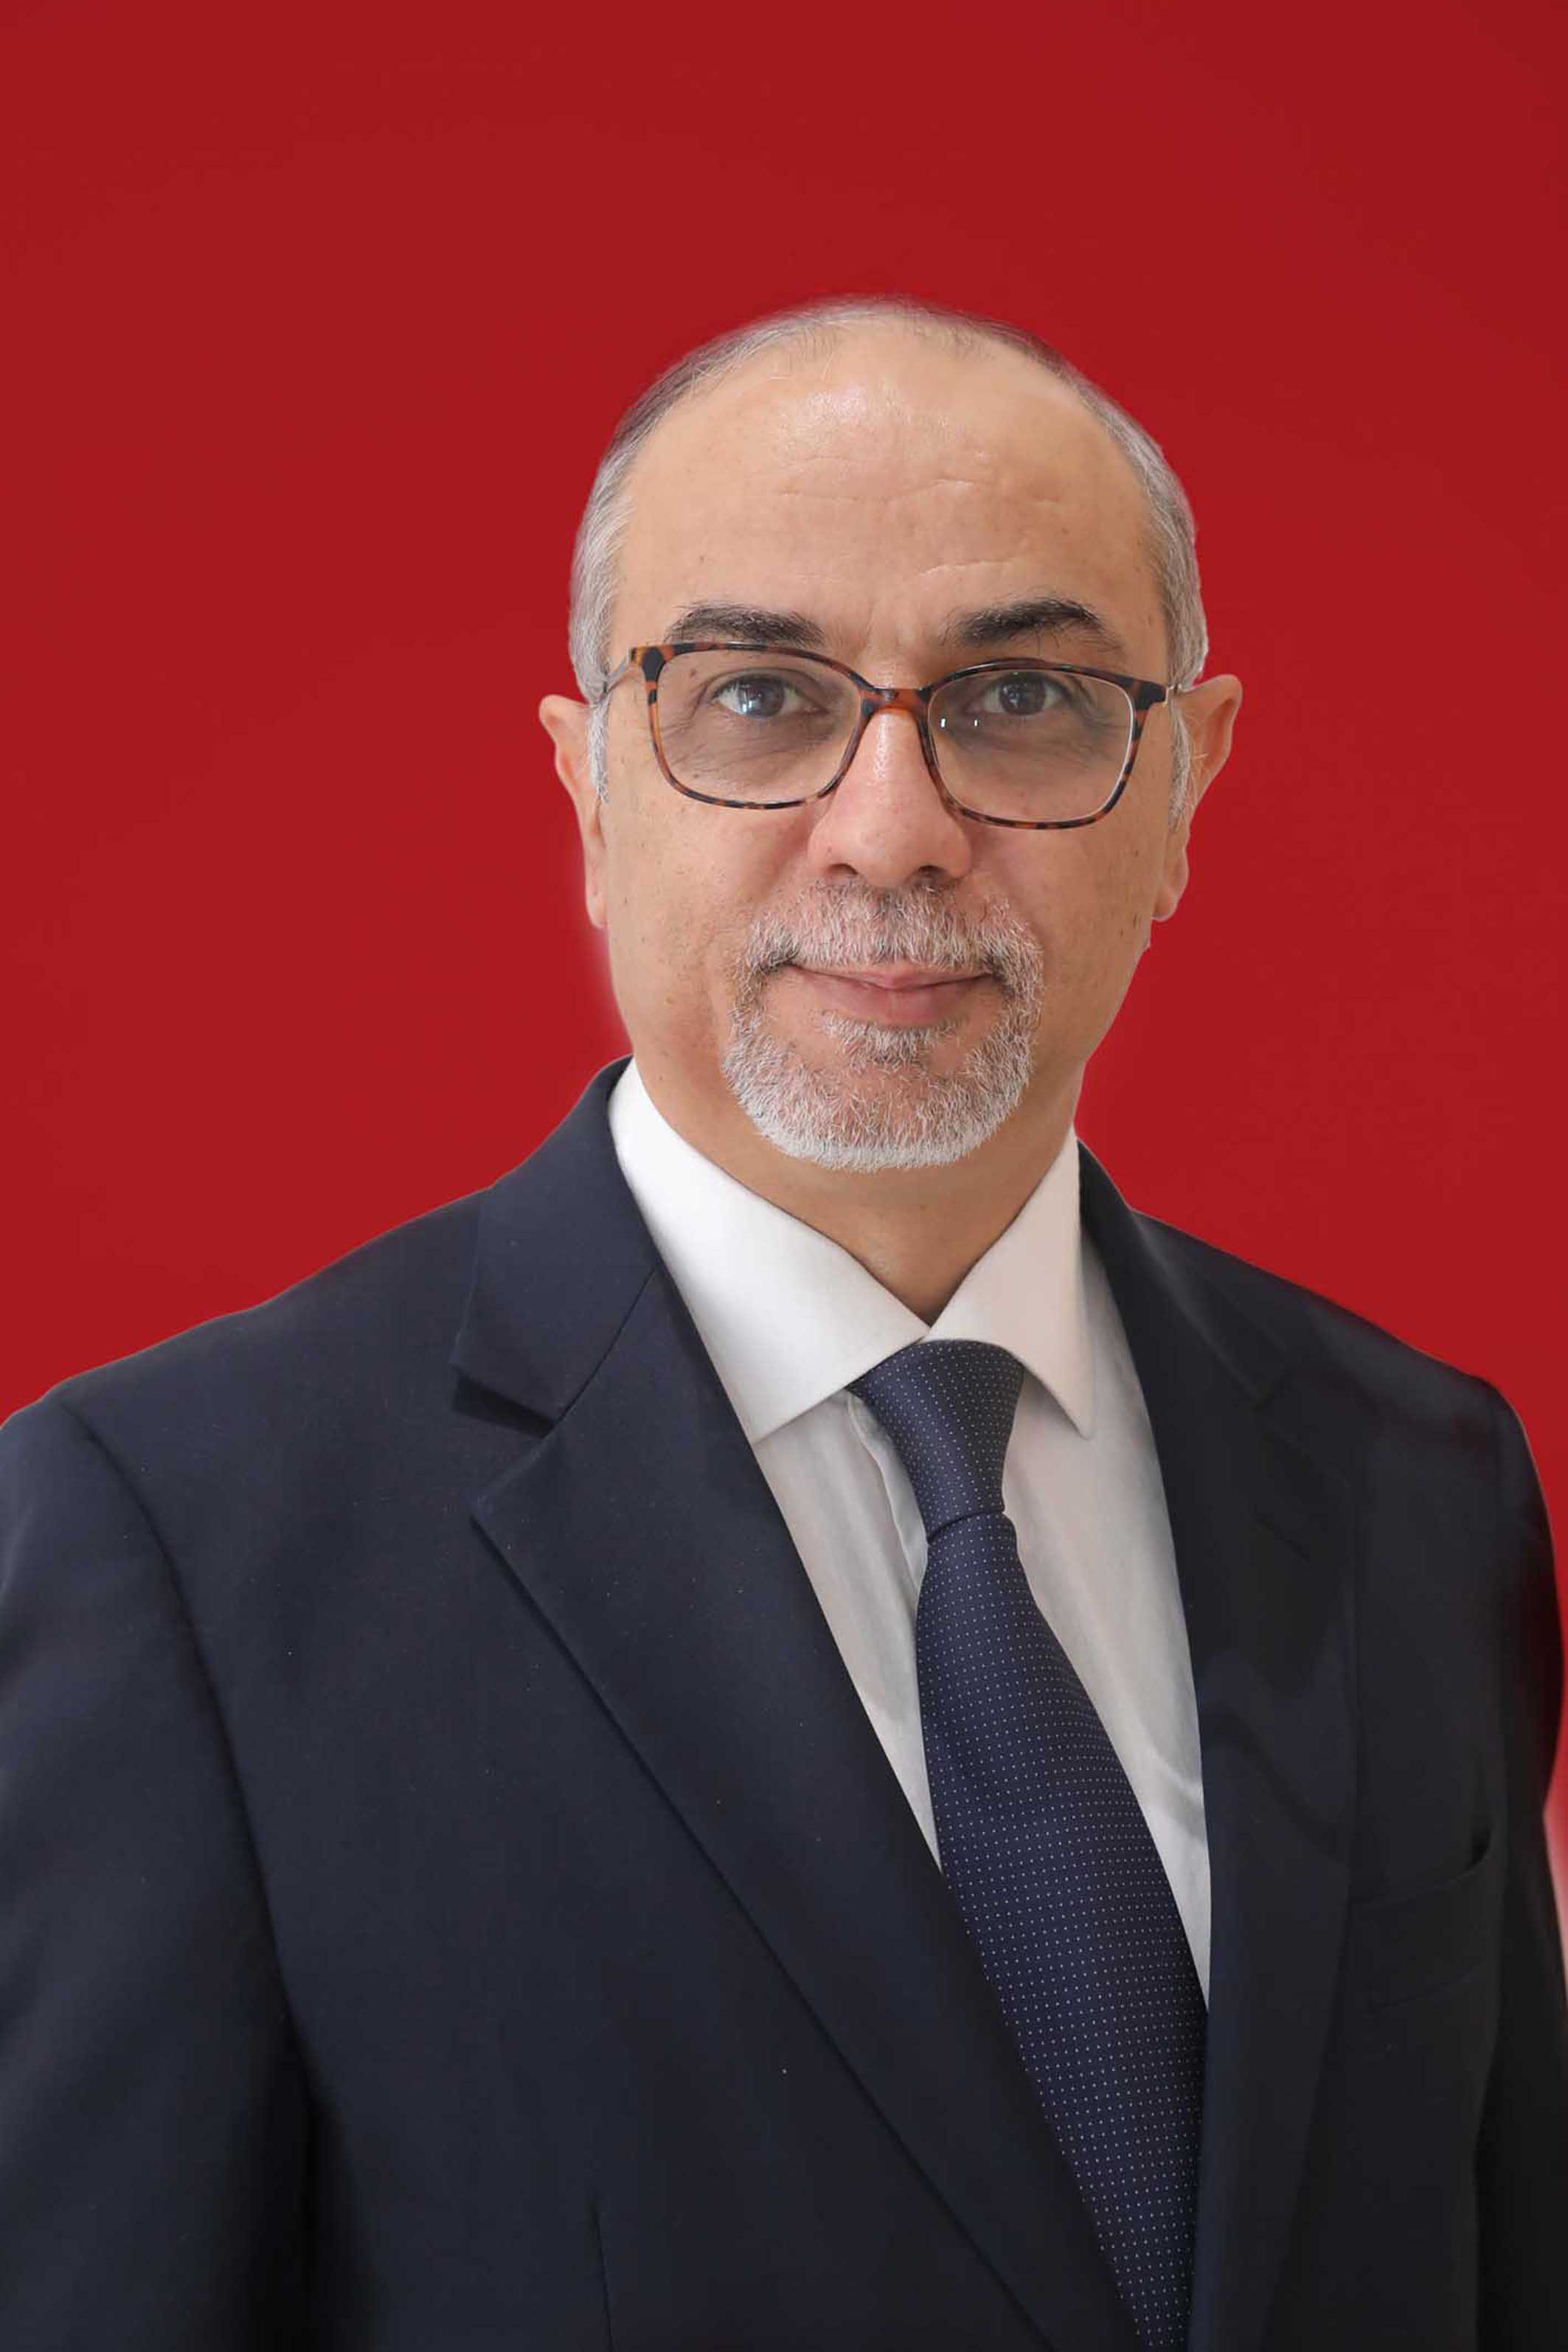 الدكتور خالد الوزني  ..  اسم من العيار الثقيل في عالم الاقتصاد وسلسلة من الانجازات الناجحة